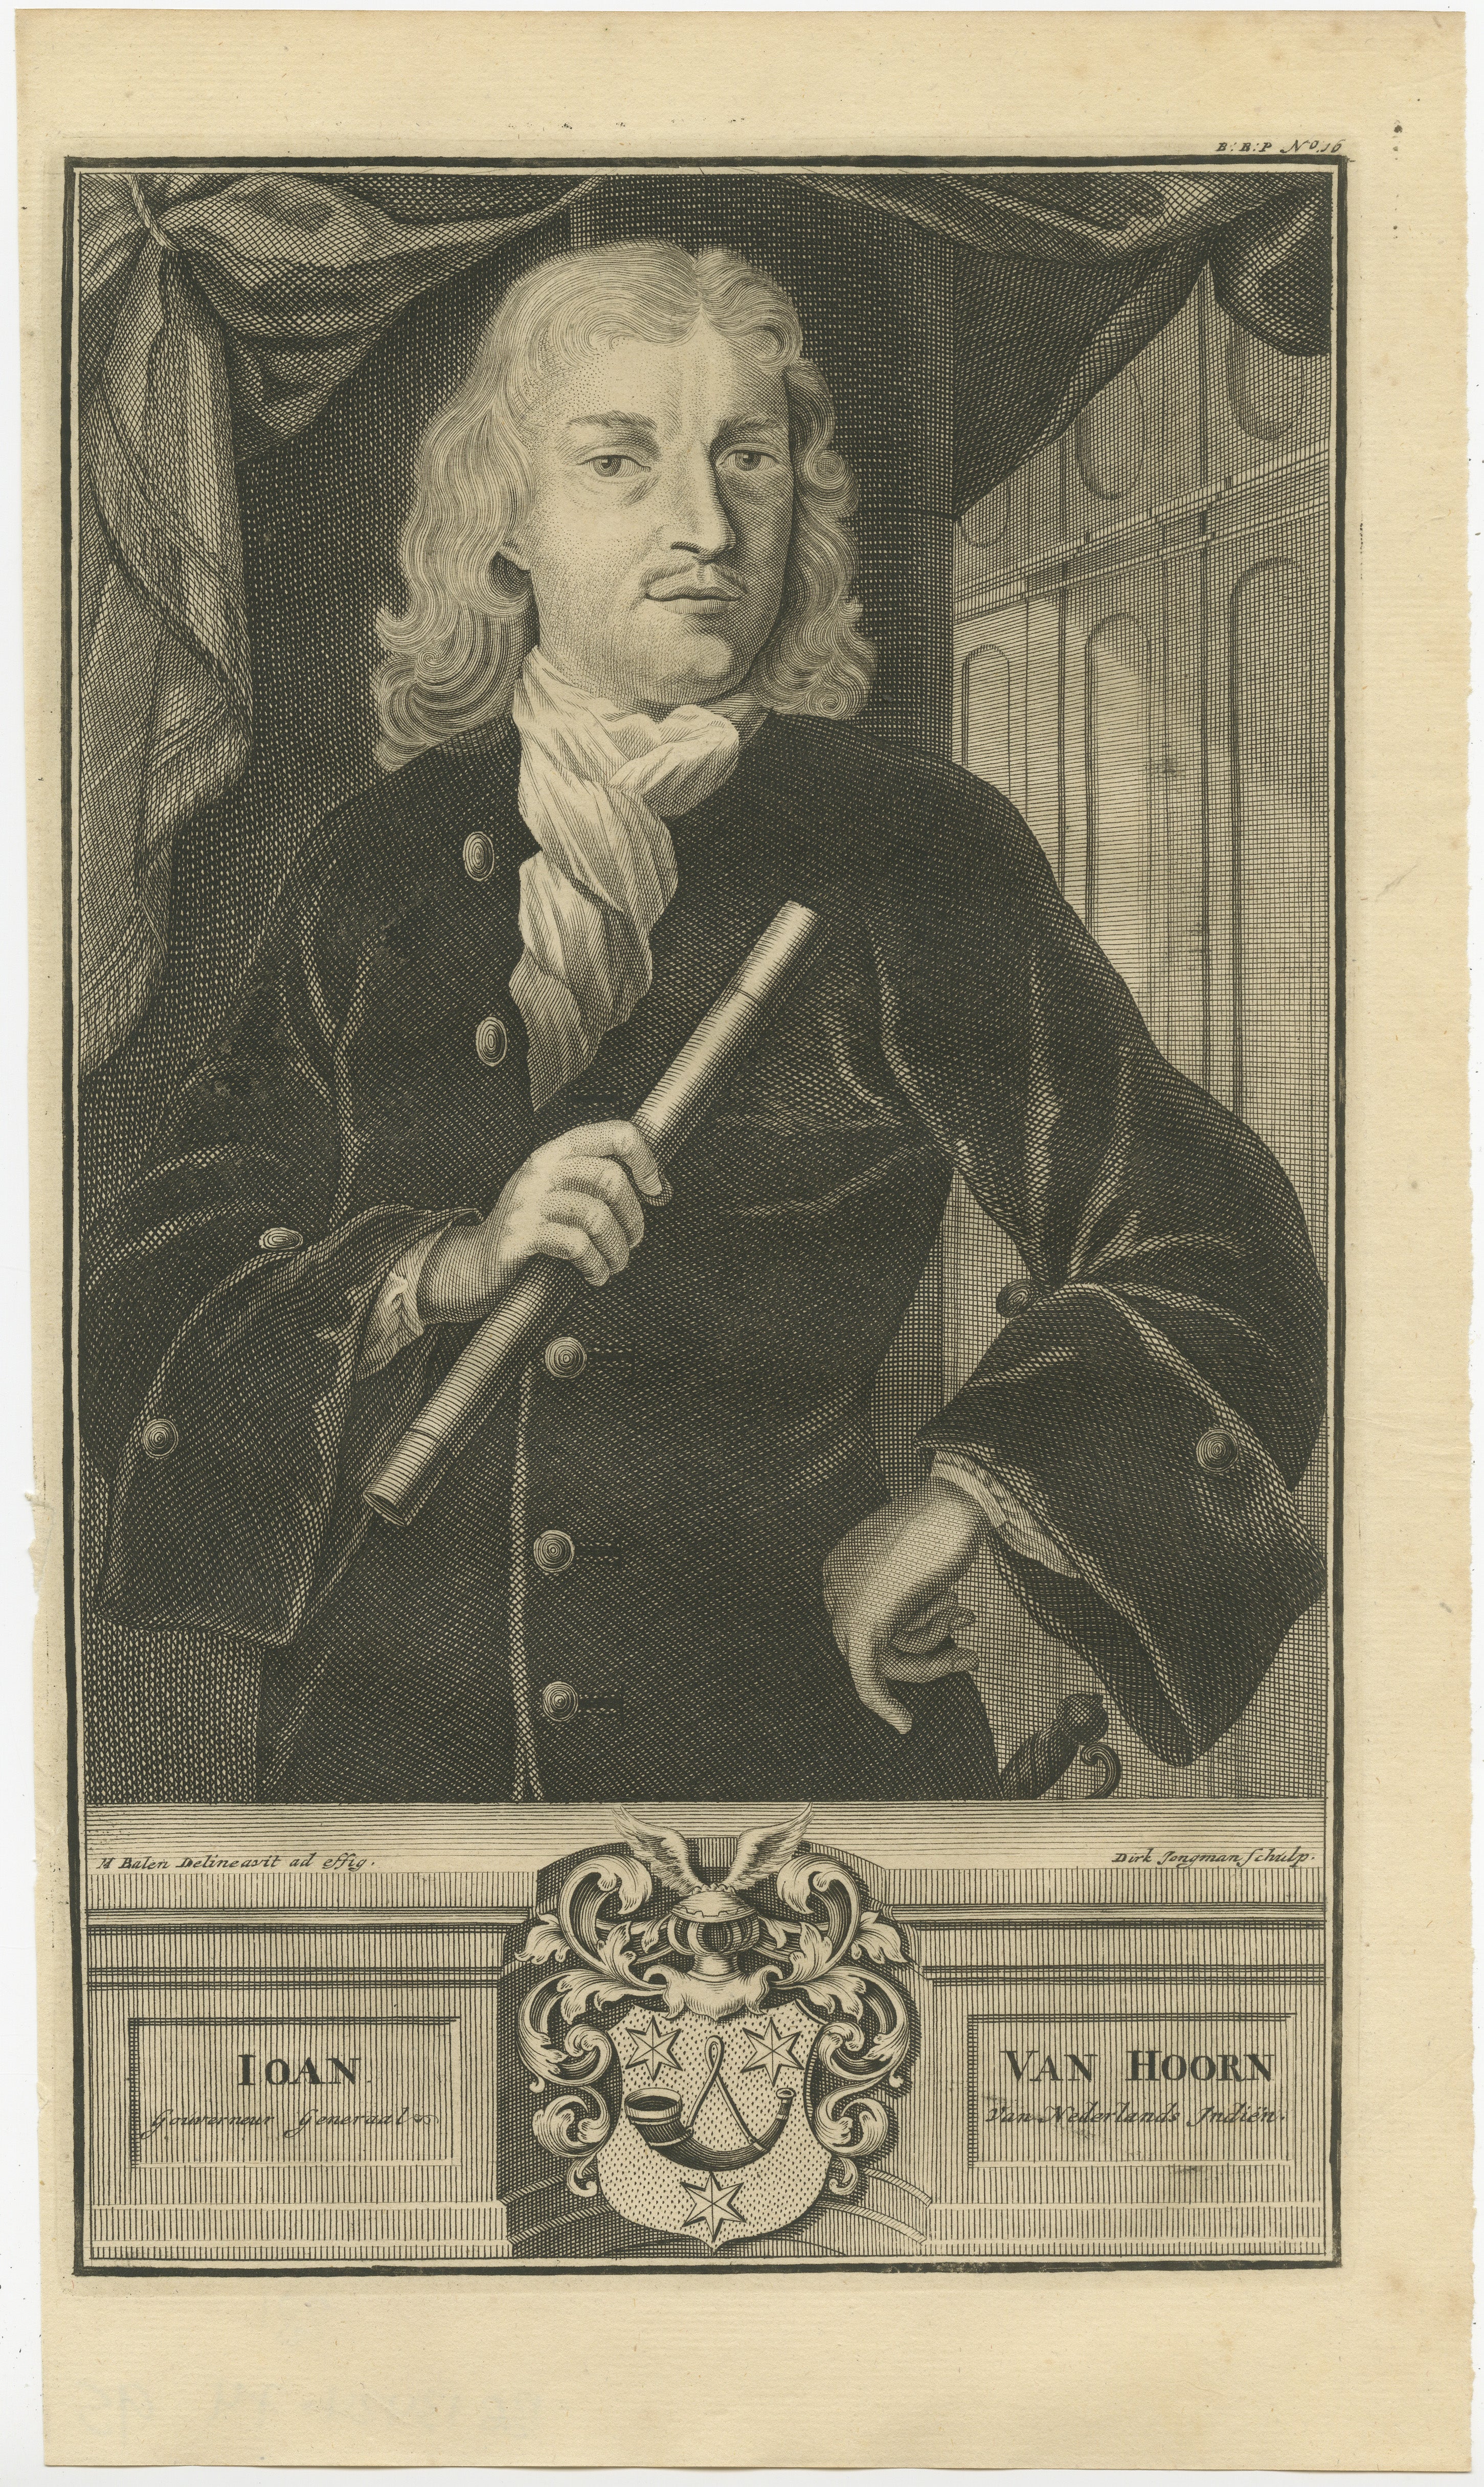 Ioan (oder Johan) van Hoorn war Generalgouverneur von Niederländisch-Ostindien, und seine Amtszeit dauerte von 1704 bis 1709.  

Dieses Porträt von Ioan van Hoorn, das zu Beginn des 18. Jahrhunderts entstand, zeigt das Bildnis einer Schlüsselfigur